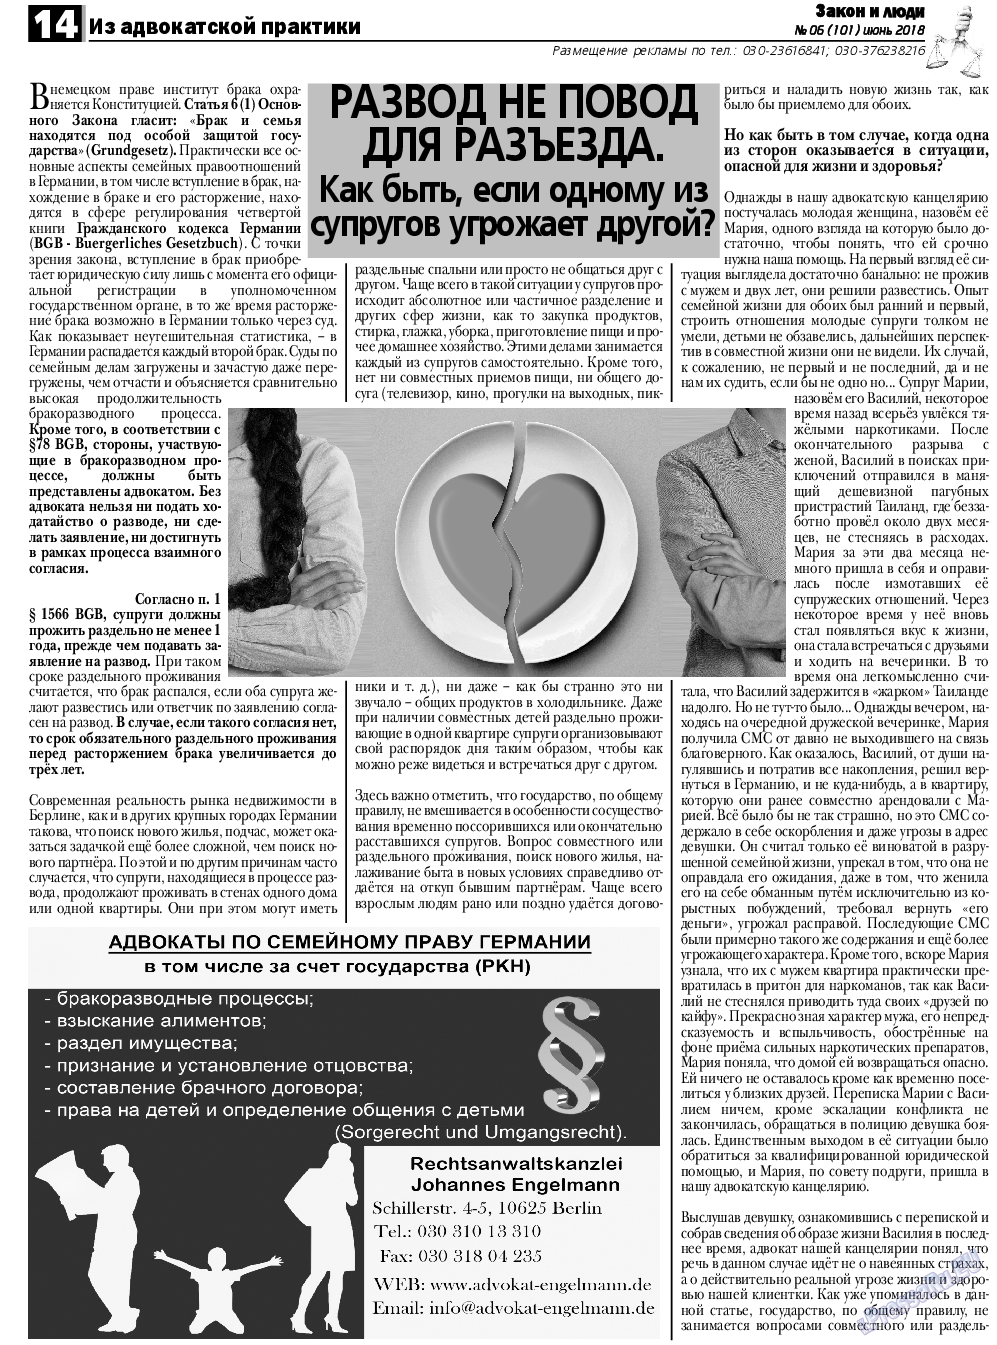 Закон и люди, газета. 2018 №6 стр.14